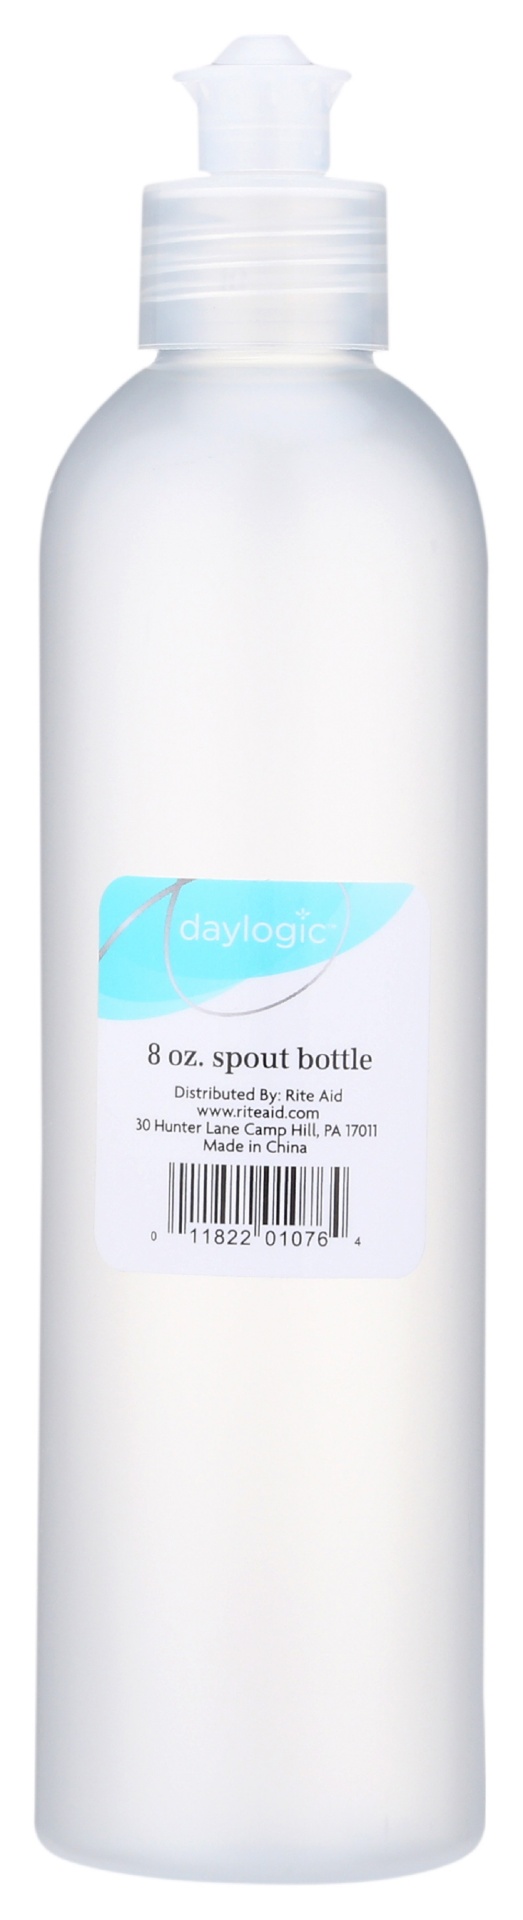 slide 1 of 1, Daylogic Spout Bottle, 8 oz